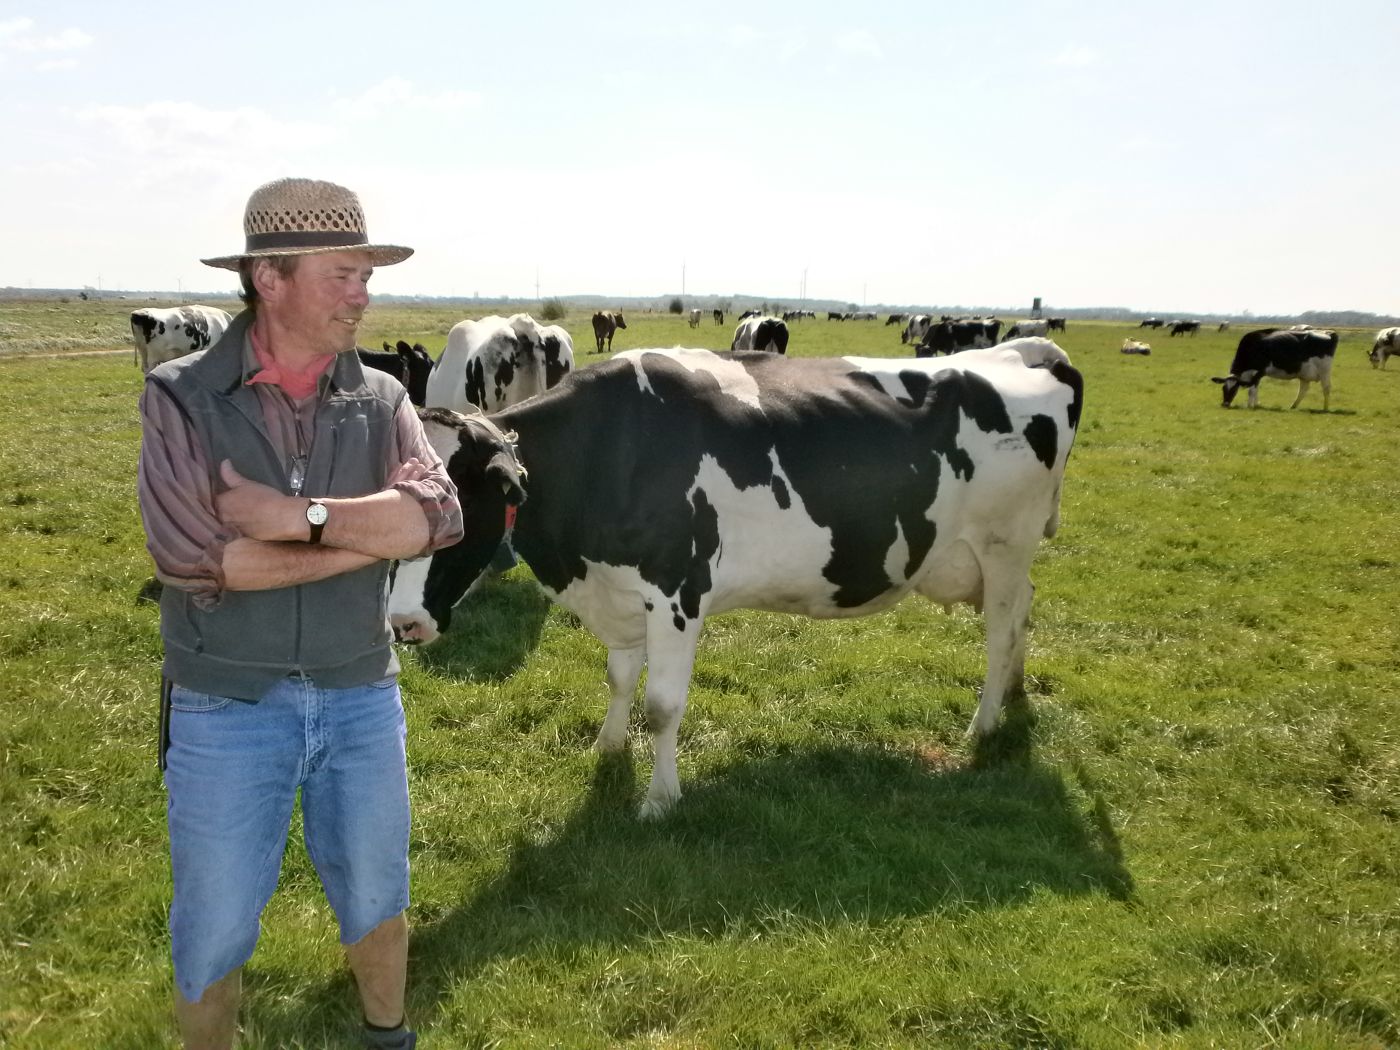 Mann mit Hut neben Kühen auf Weide